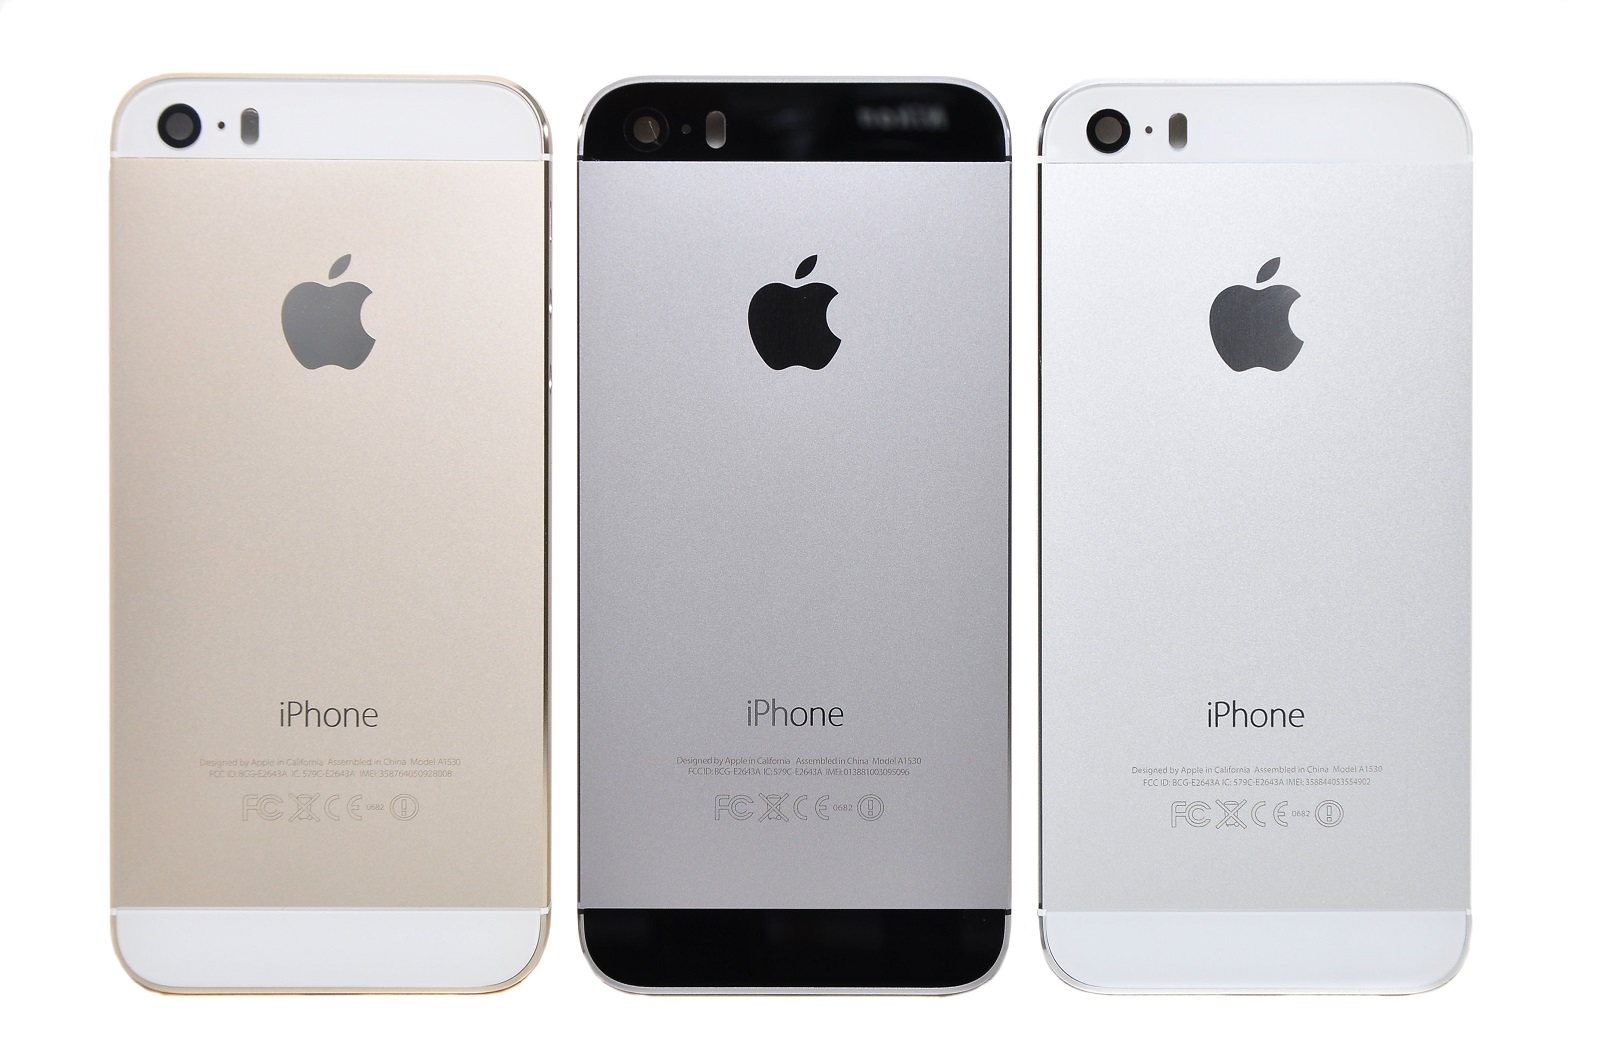 Iphone 5 год. Айфон 5s цвета. Айфон 5 s цвета корпуса. Apple iphone 5 цвета. Iphone 5 цвета корпуса.